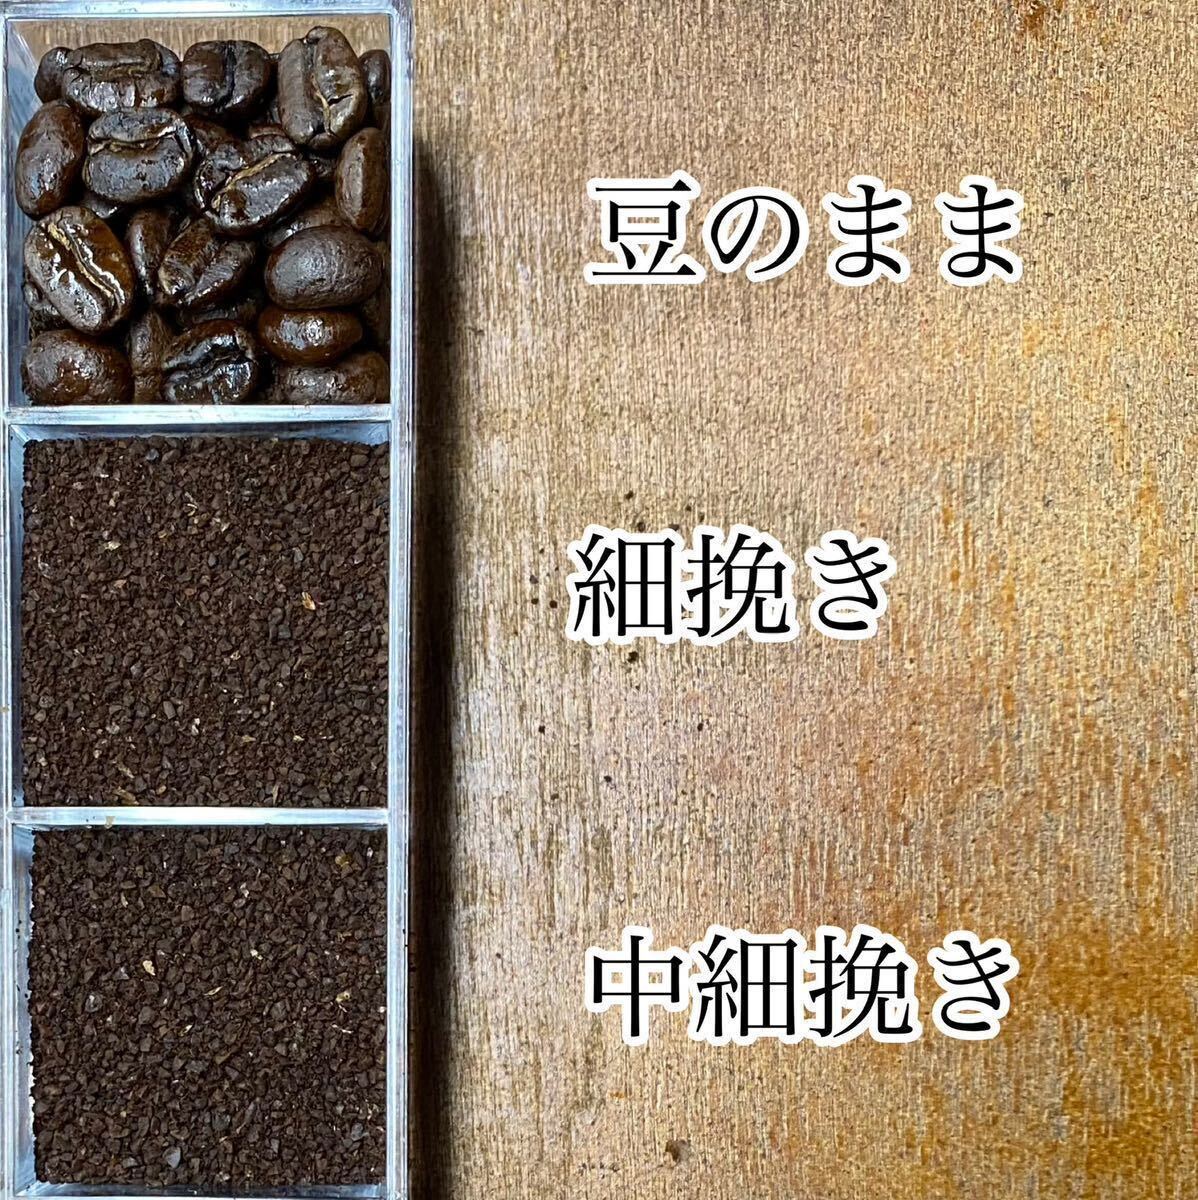 春限定ブレンドセットA 自家焙煎コーヒー豆3種(100g×3個)